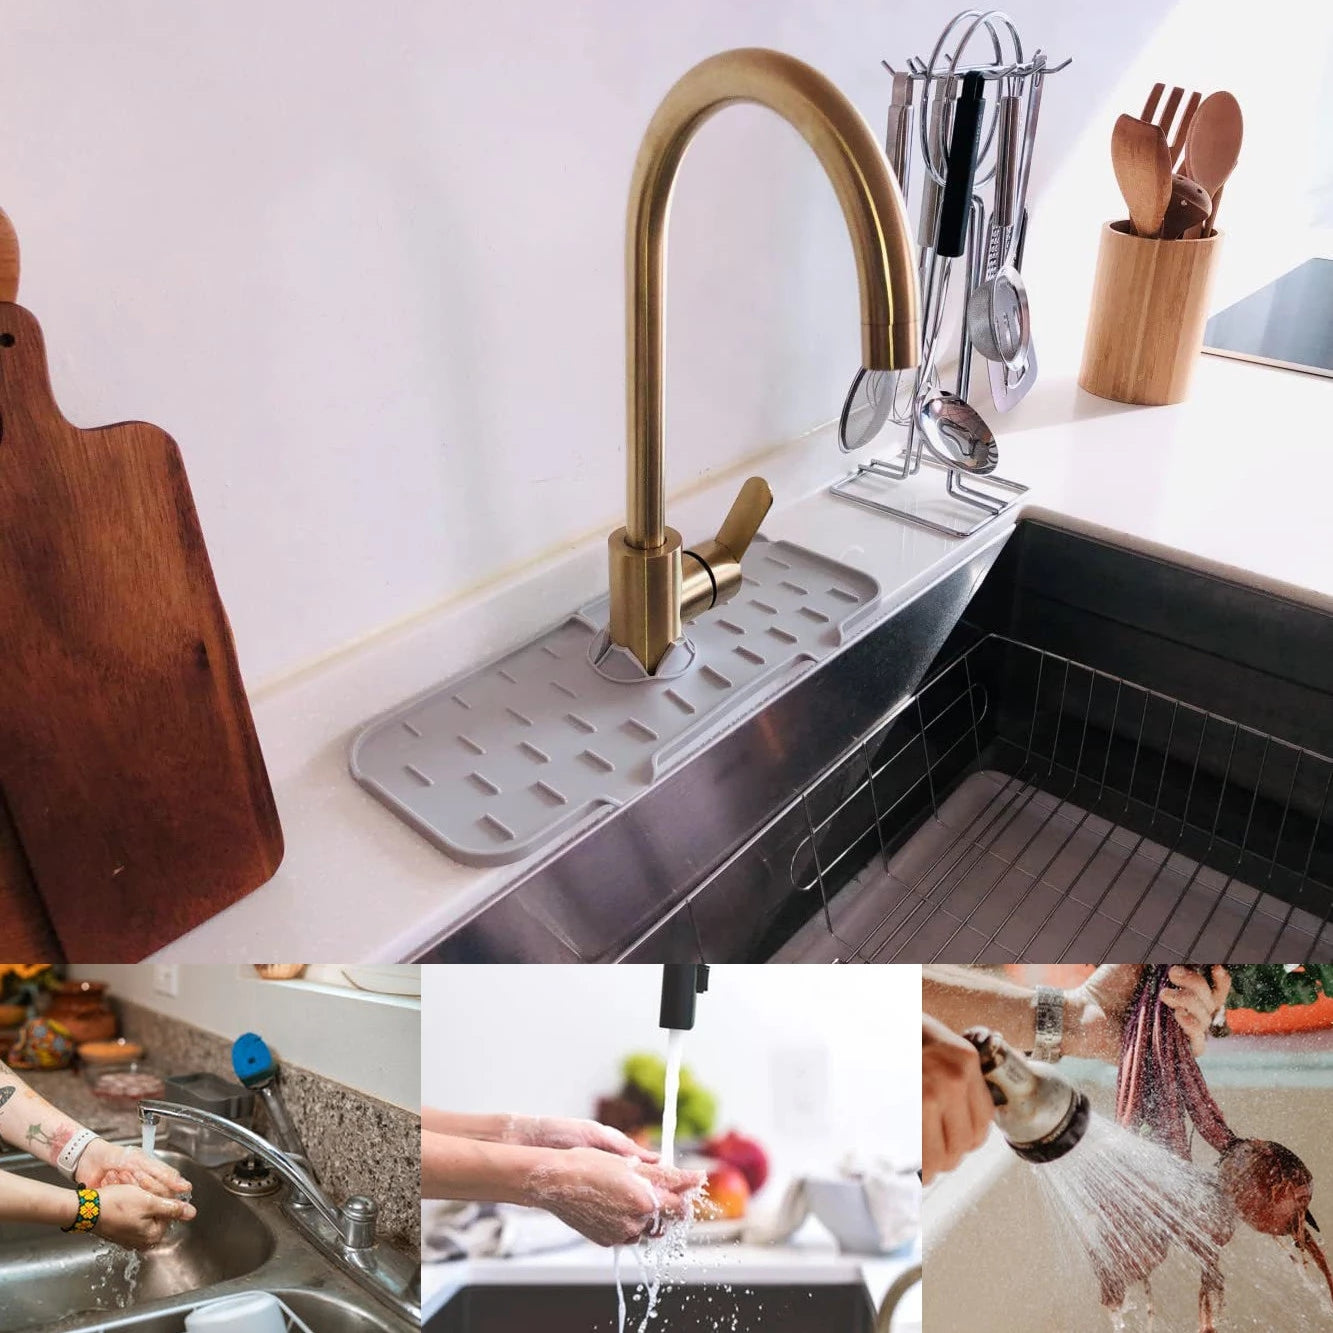 2pcs Kitchen Silicone Faucet Mat Sink Splash Guard Faucet Drainage